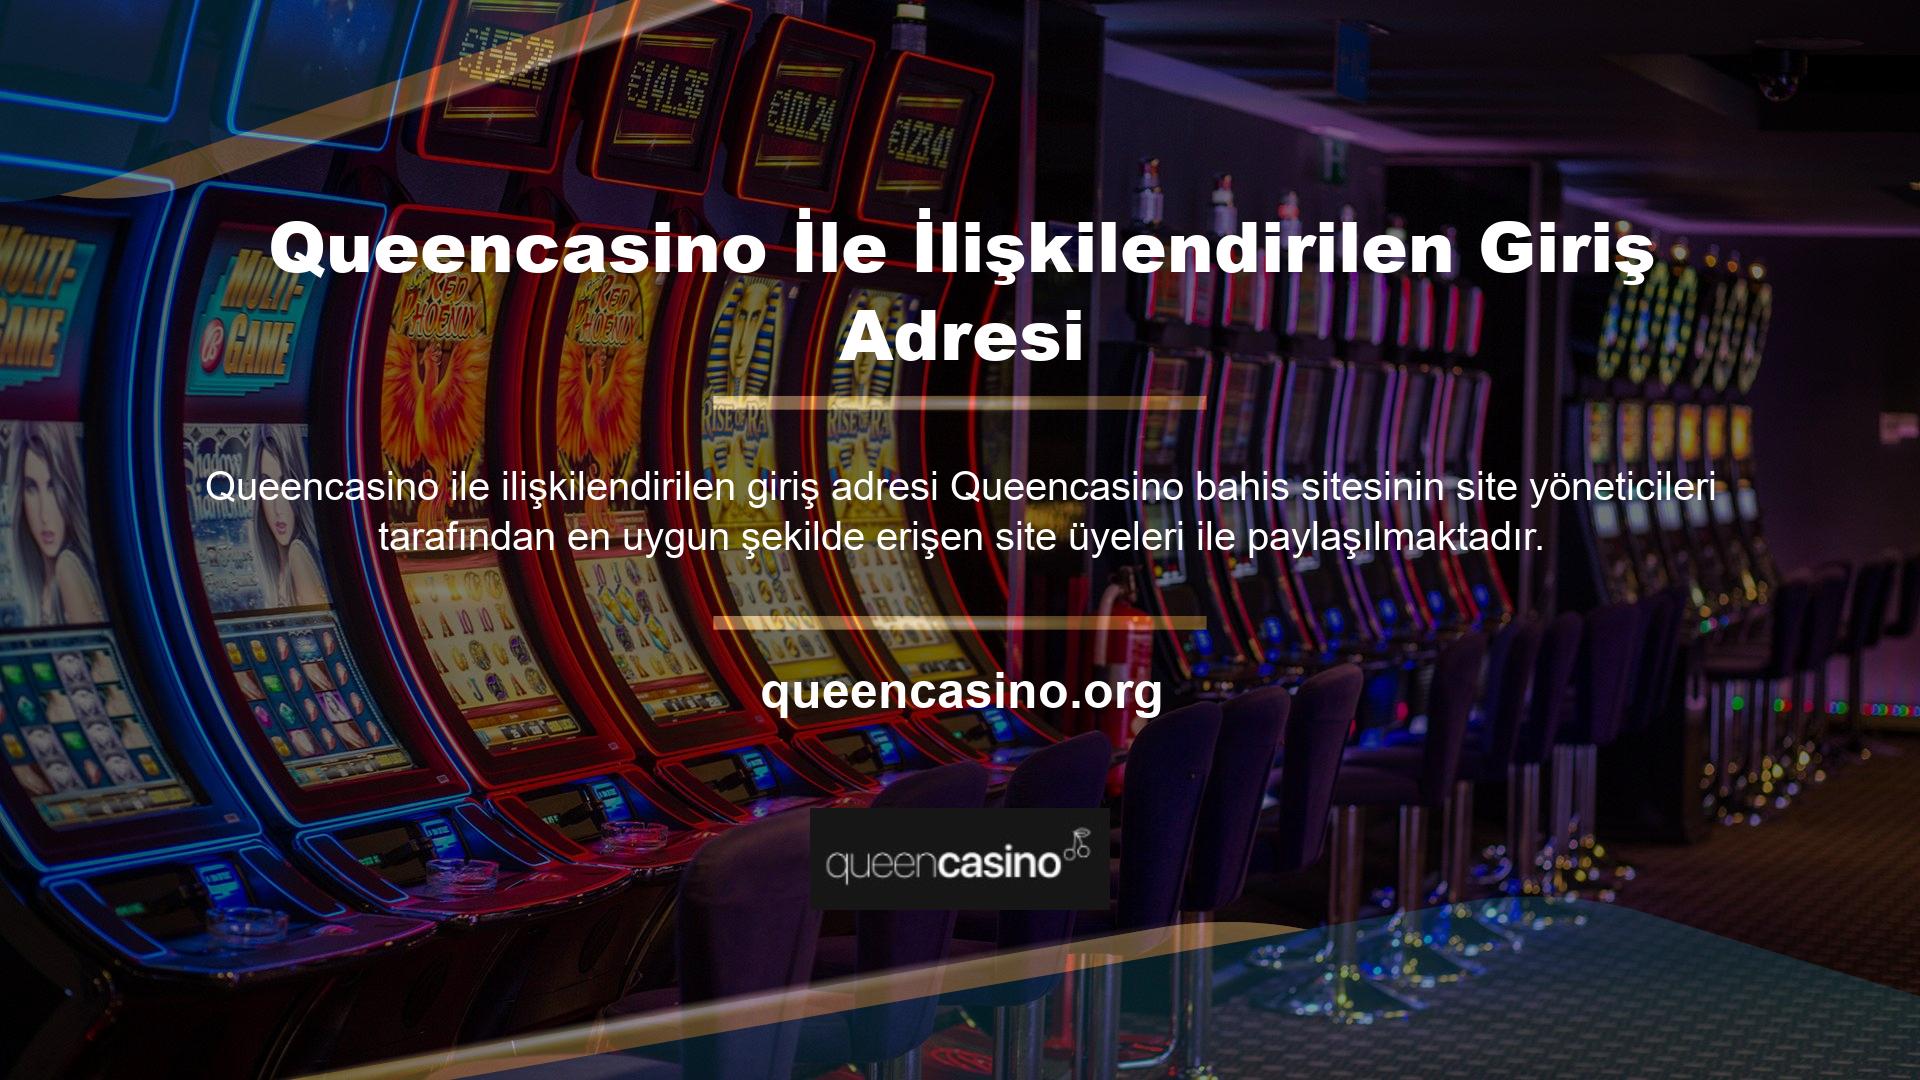 Özellikle ülkemizde BTK tarafından yasaklamanın ardından casino siteleri yeni giriş adresleri kurmak zorunda kalacak